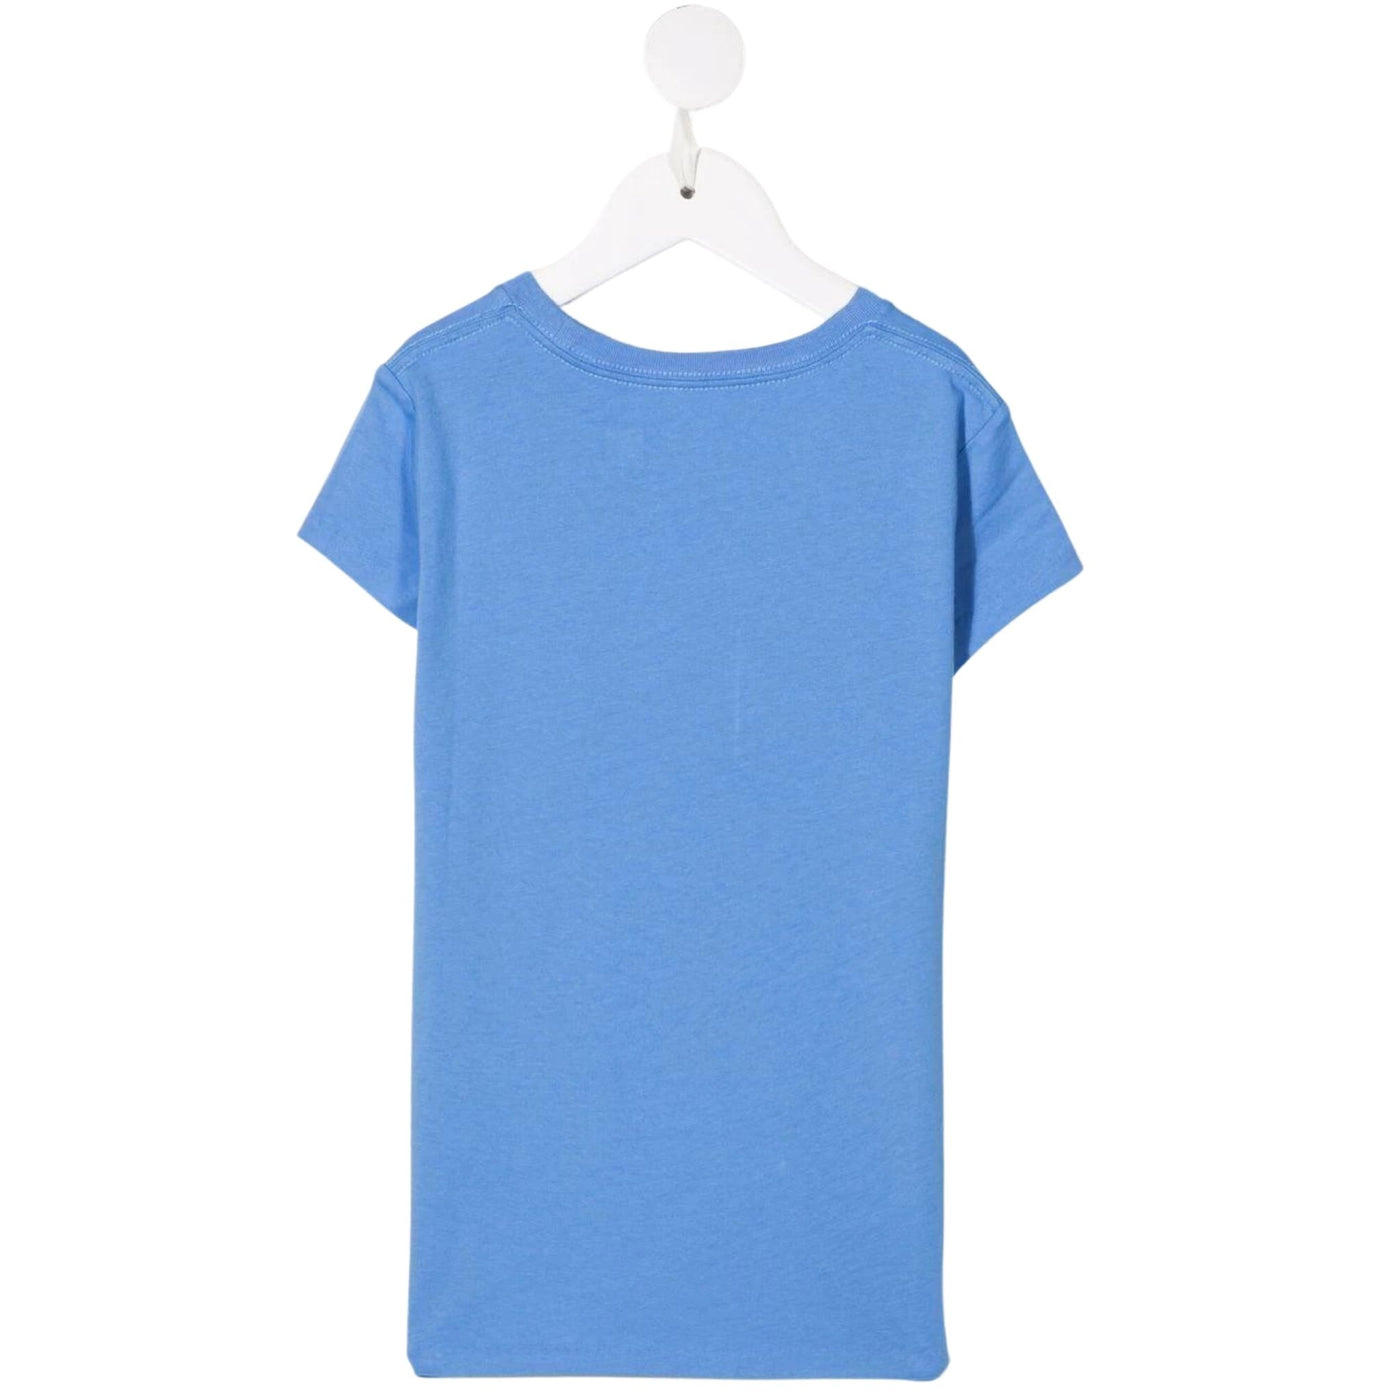 T-shirt bambina celeste Polo Ralph Lauren vista retro